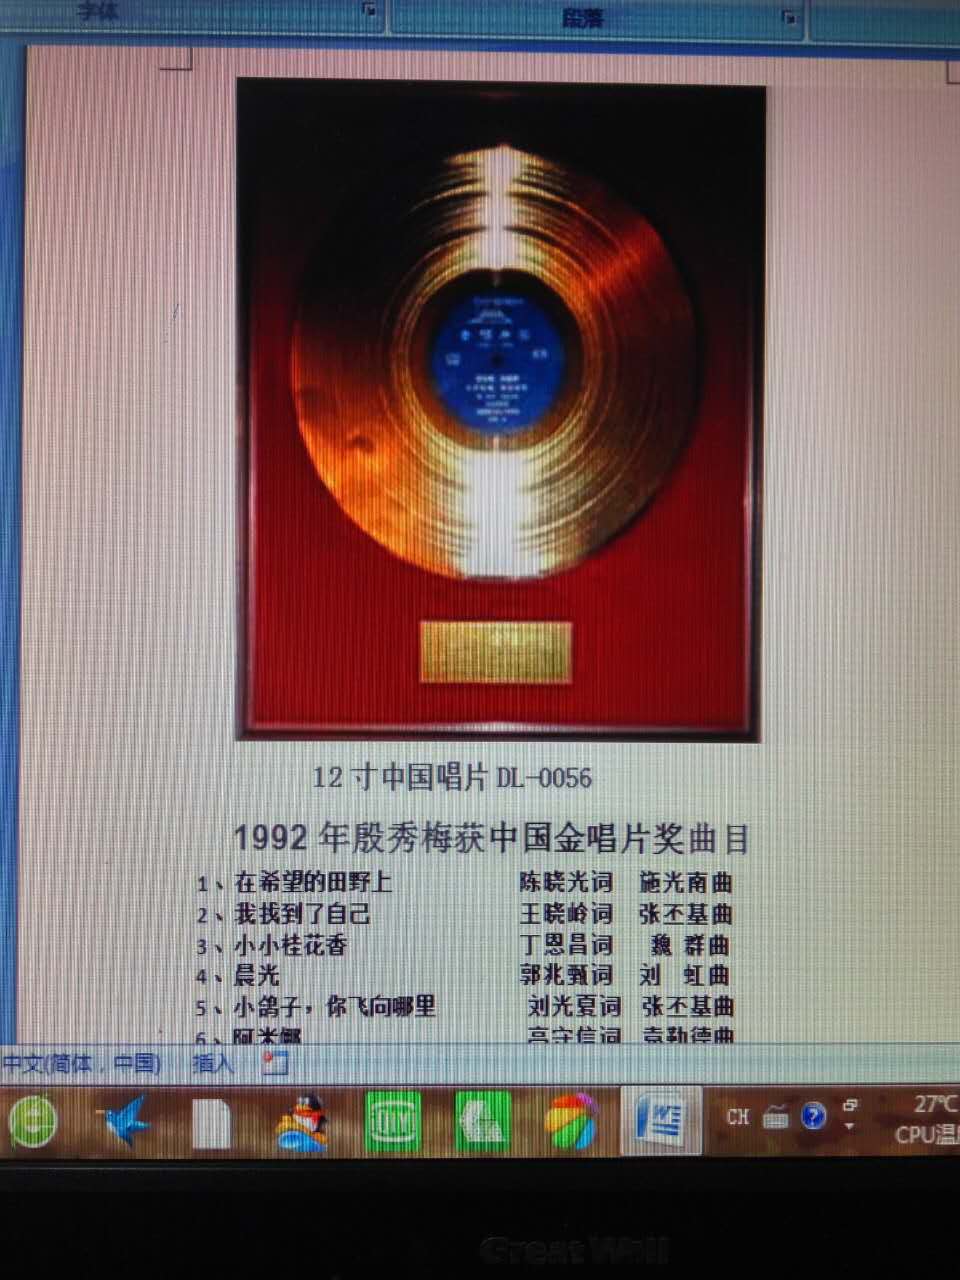 丁恩昌《小小桂花香》为第二届中国金唱片作品之一